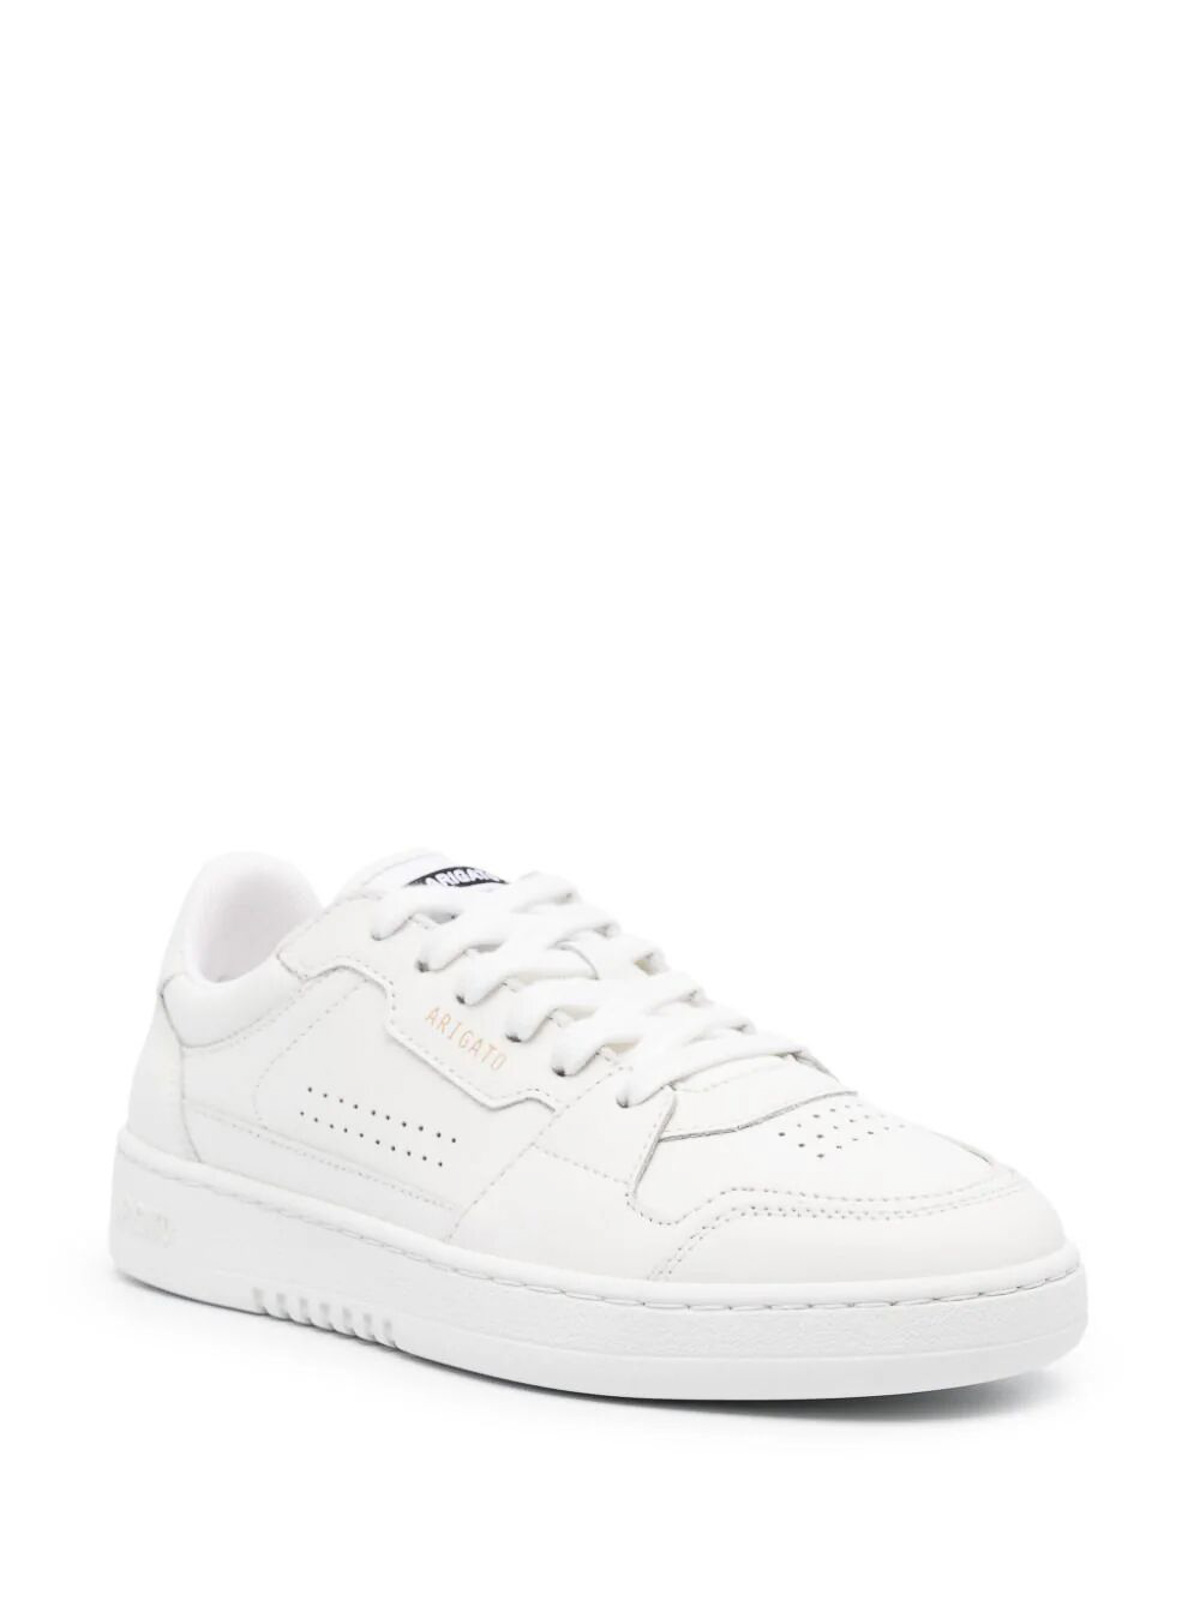 Shop Axel Arigato Dice Lo Sneaker In White